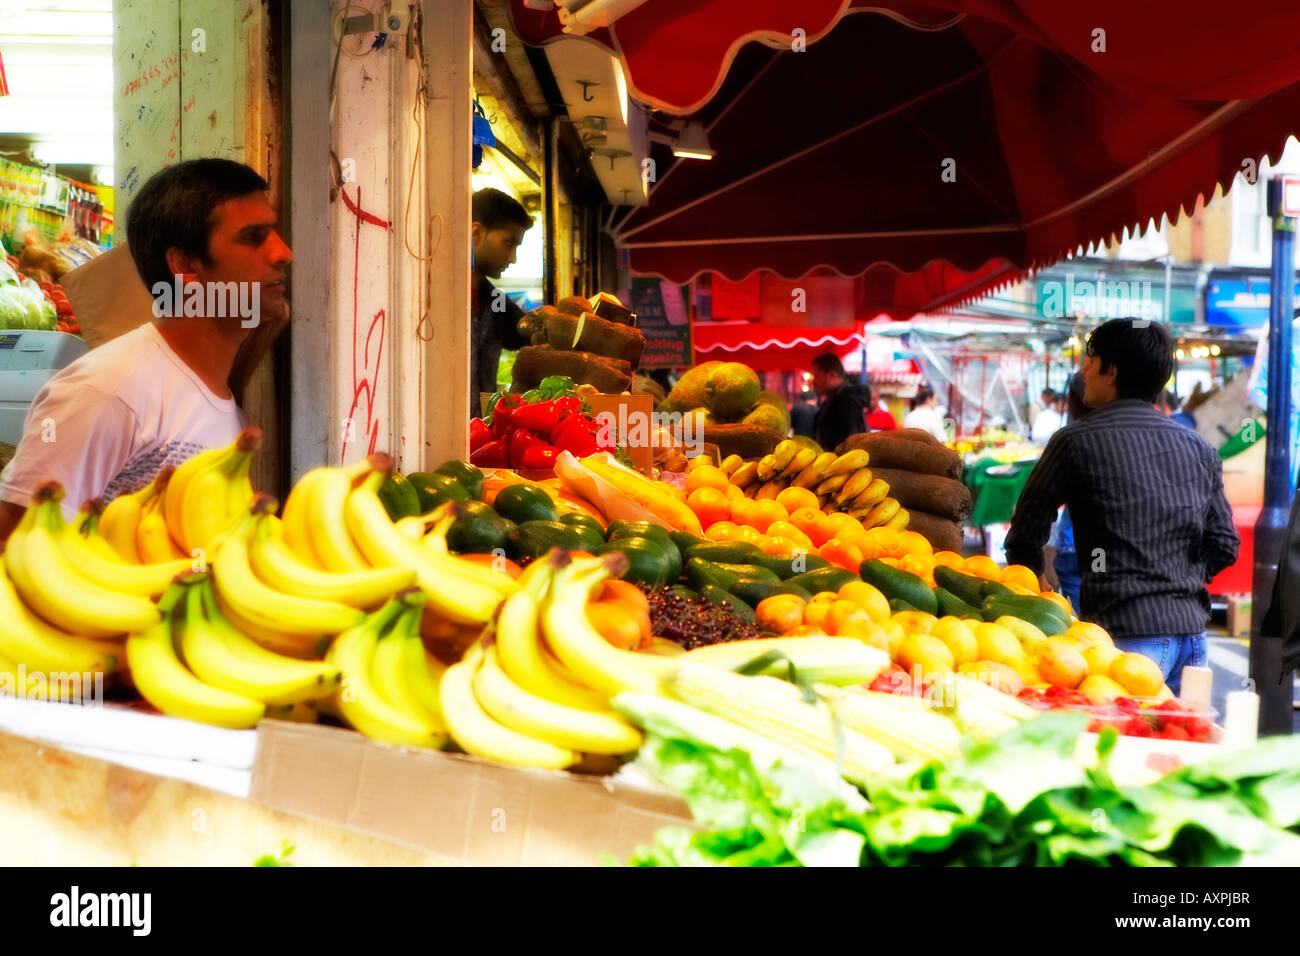 London-Brixton, Markt, London, Obst & Gemüse stall Stockfoto